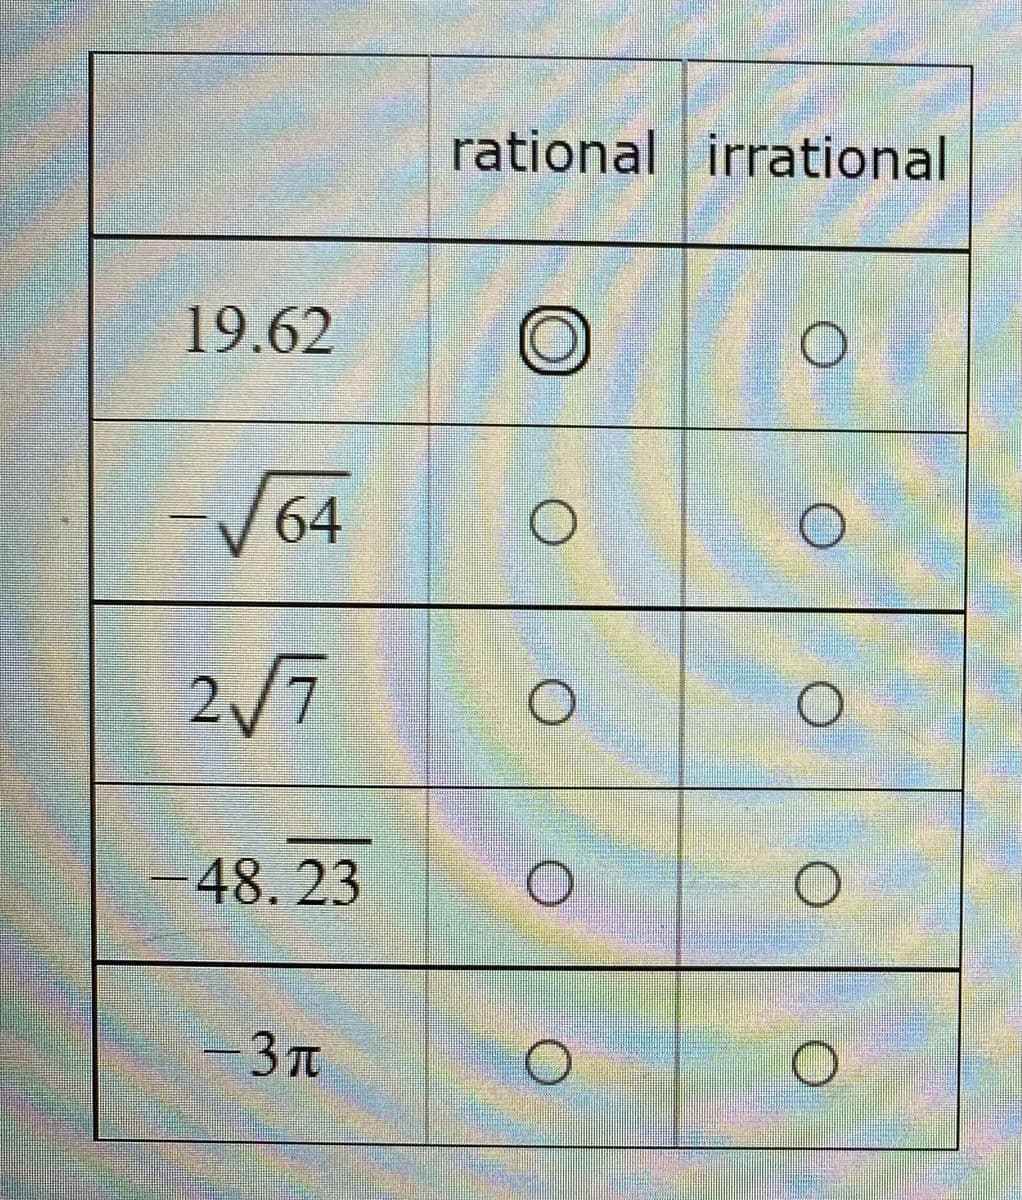 rational irrational
19.62
-V64
2/7
48. 23
3 Tt
